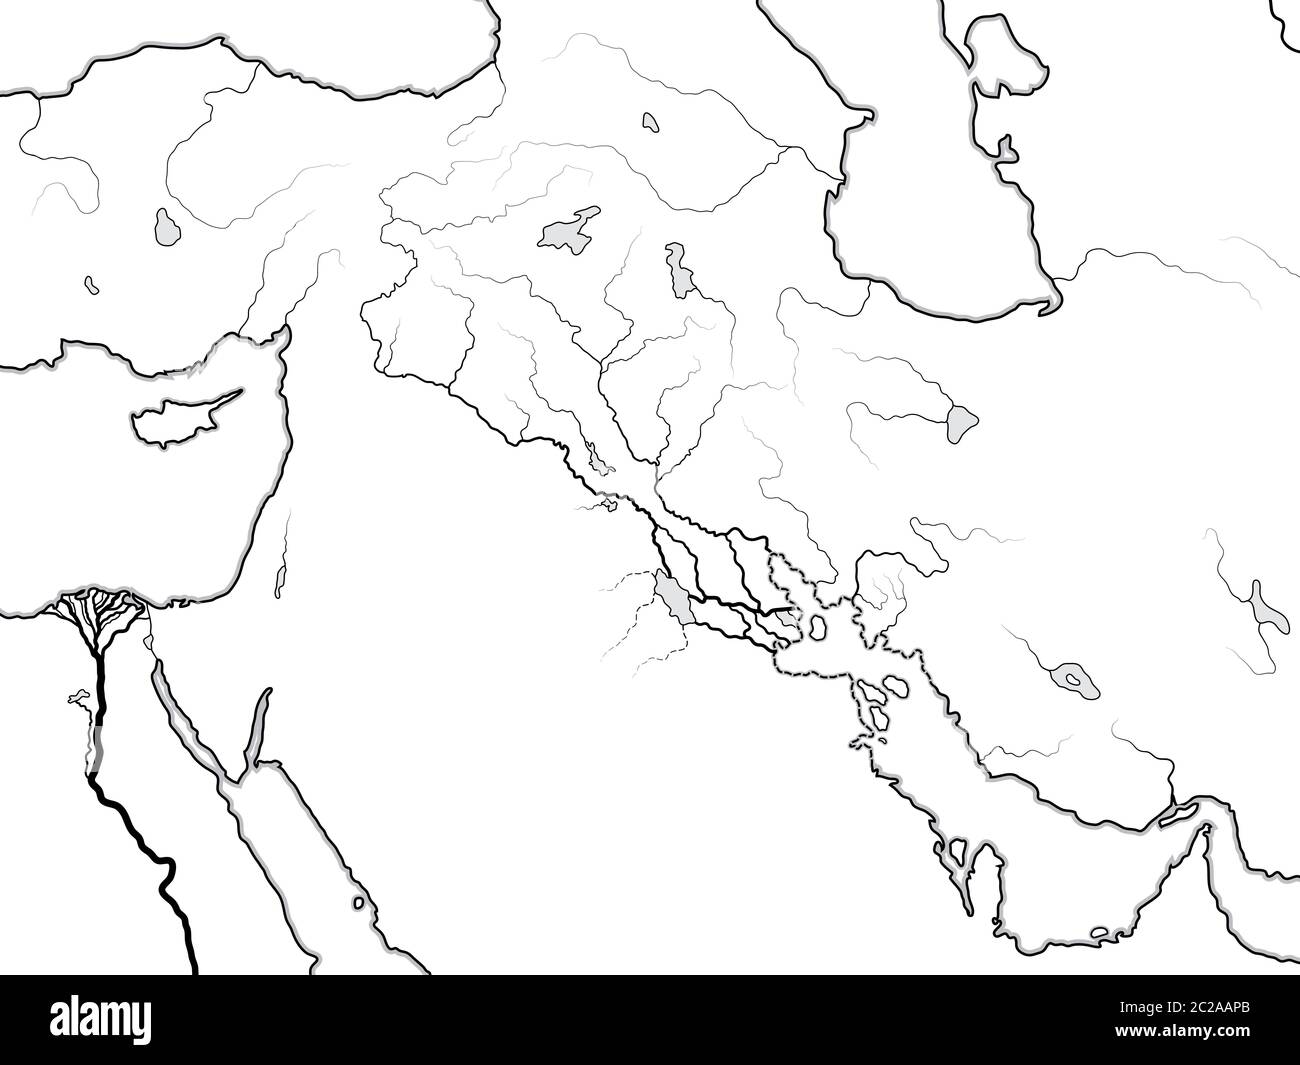 Carte du monde de MÉSOPOTAMIE: Šumer, Akkad, Babylonia, Assyrie, Tigre et Euphrate. Carte historique géographique de la Perse antique Banque D'Images